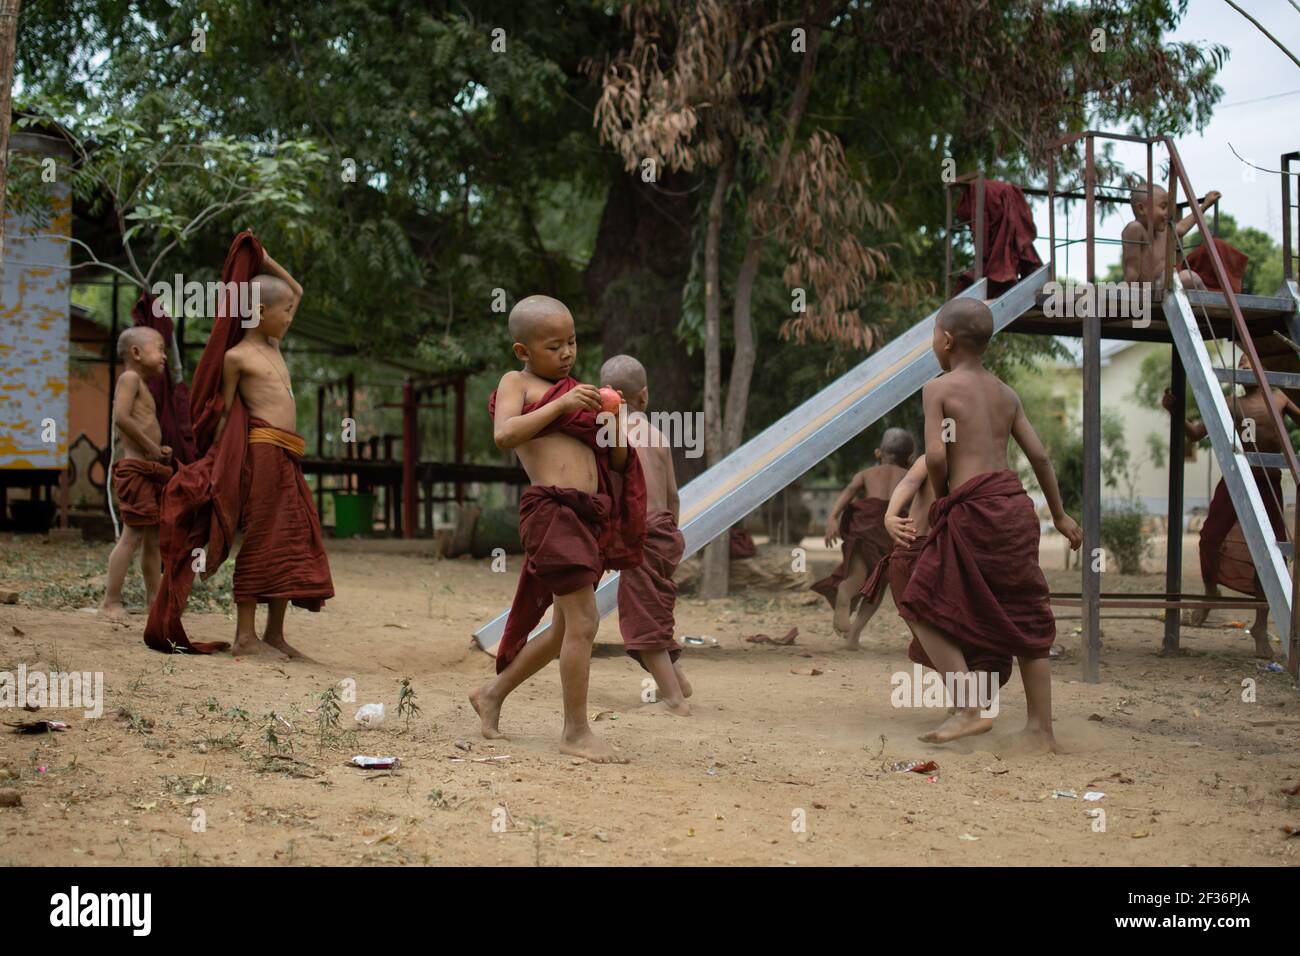 BAGAN, NYAUNG-U, MYANMAR - 2 GENNAIO 2020: Un giovane monaco mangia e mela, mentre gli altri bambini giocano e si divertono in un parco giochi locale con uno scivolo Foto Stock